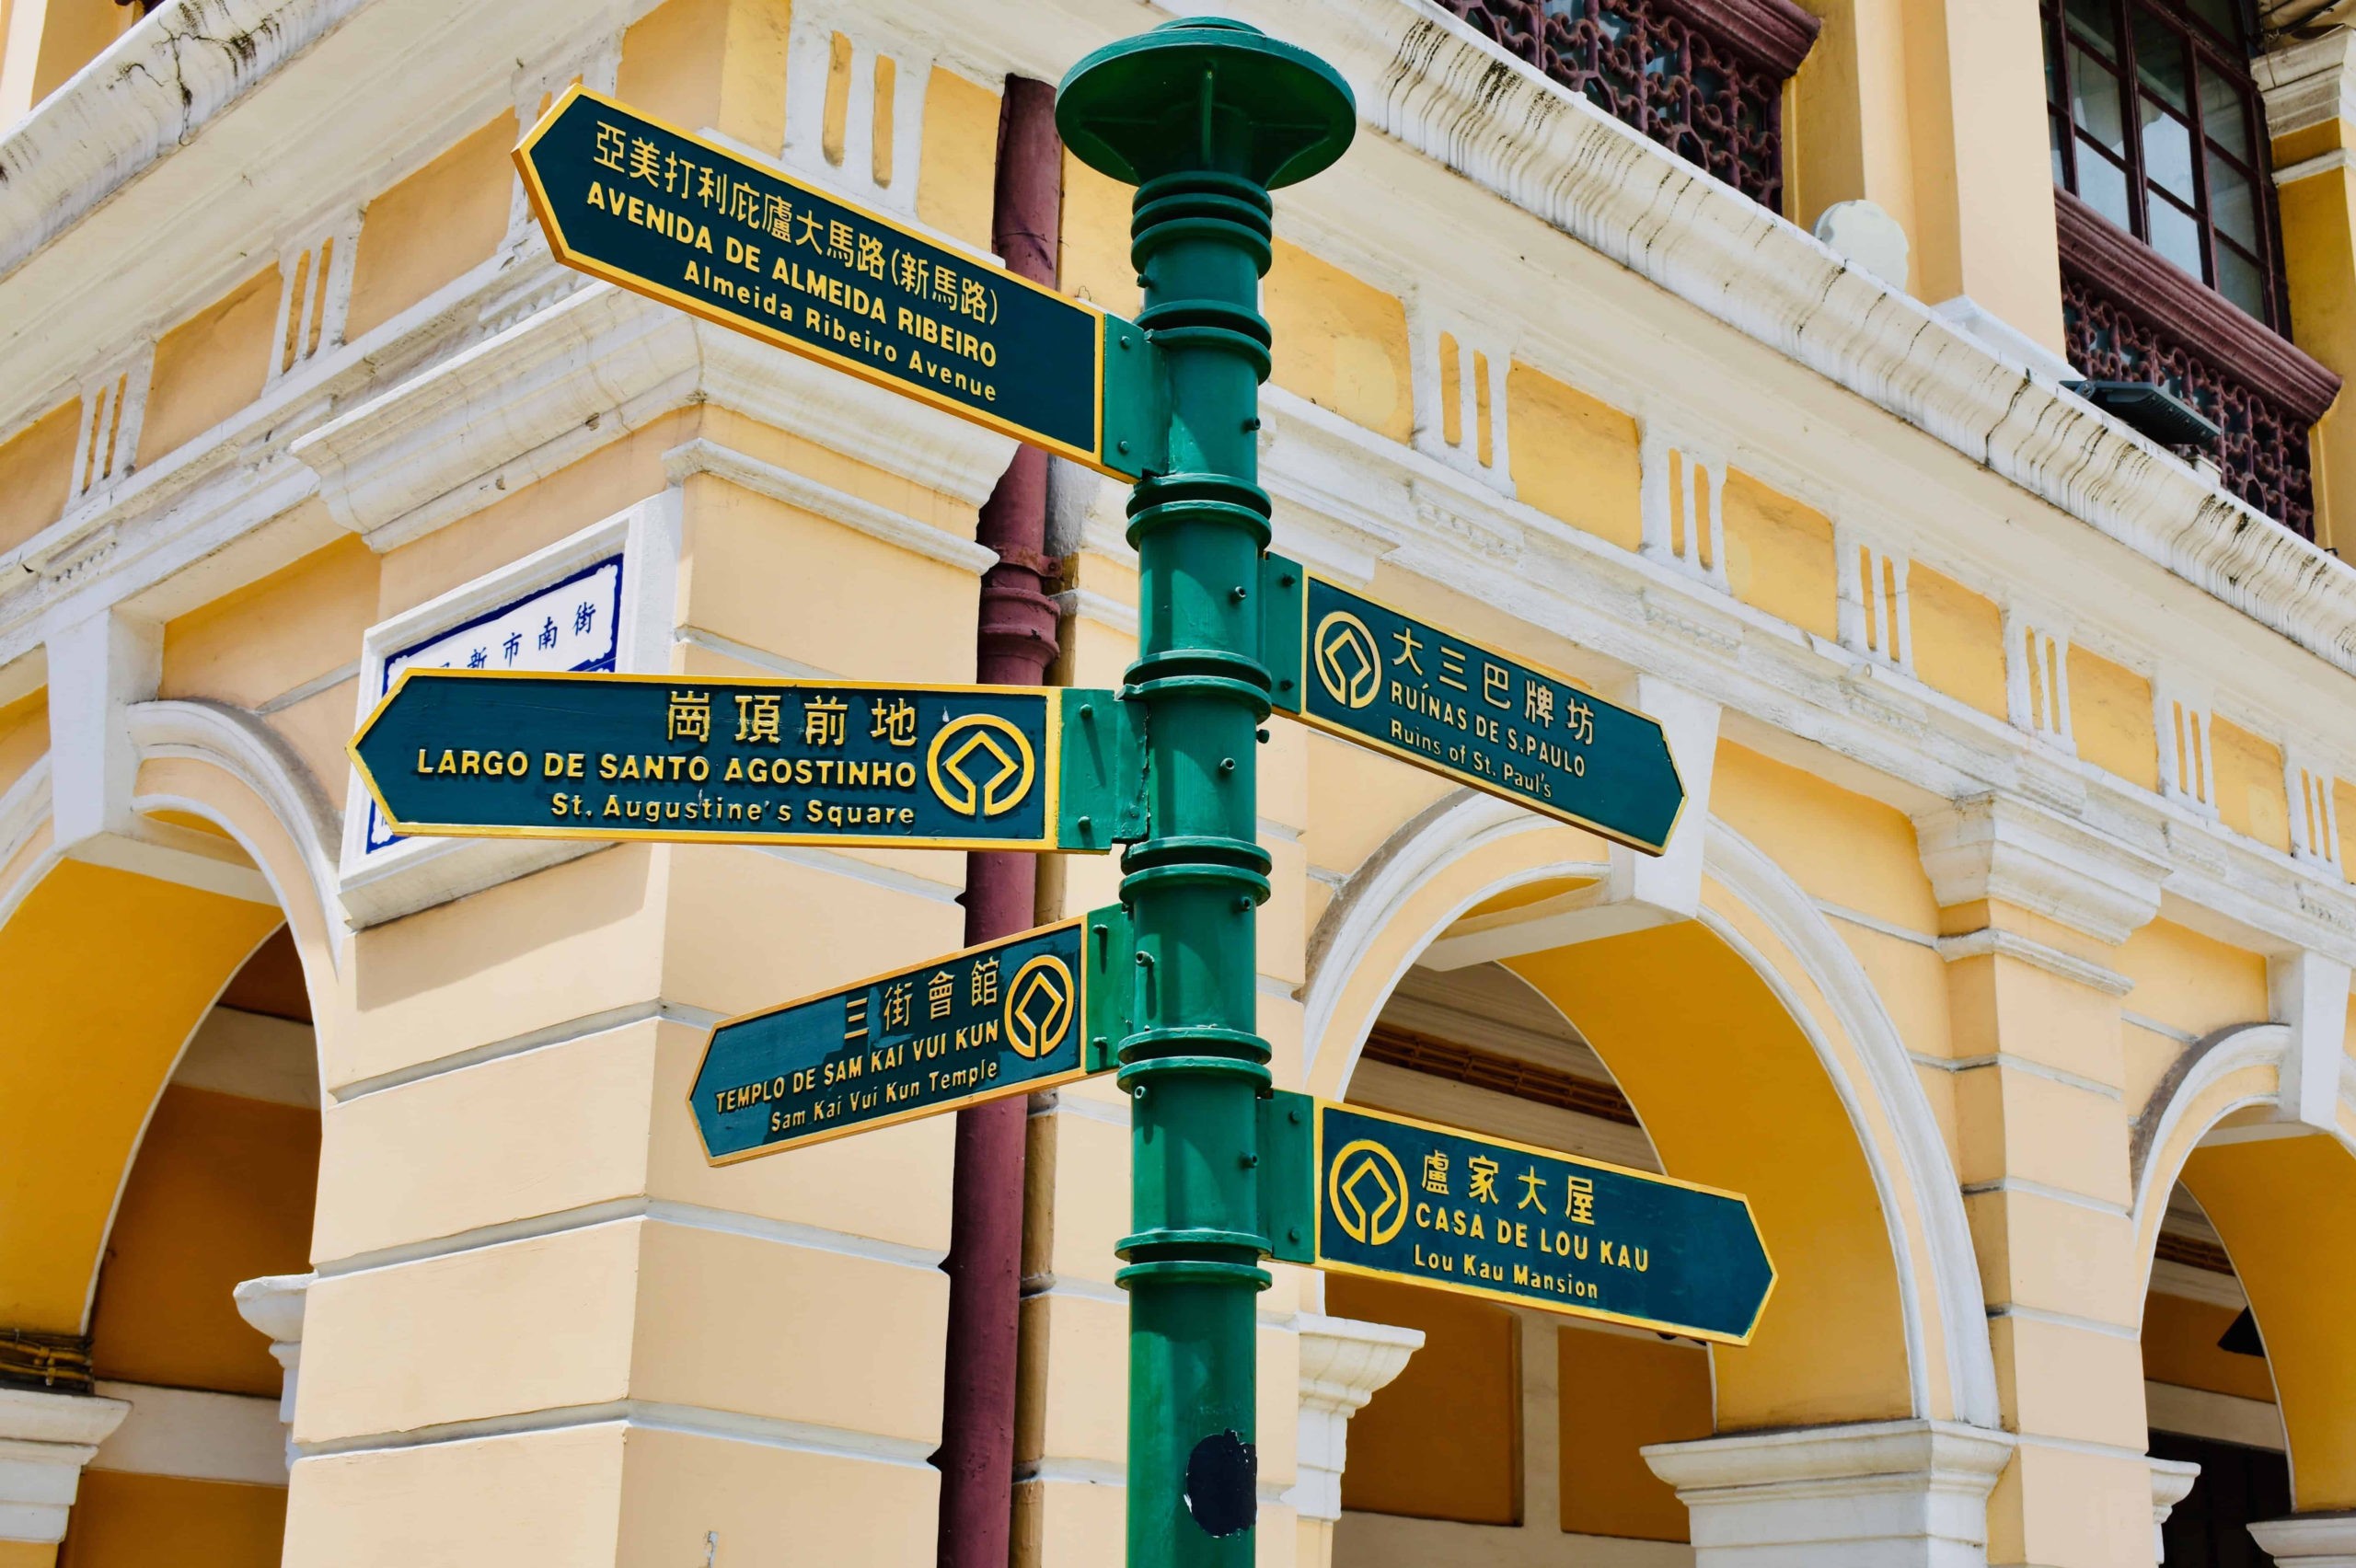 Como está o português em Macau? — Plataforma Media